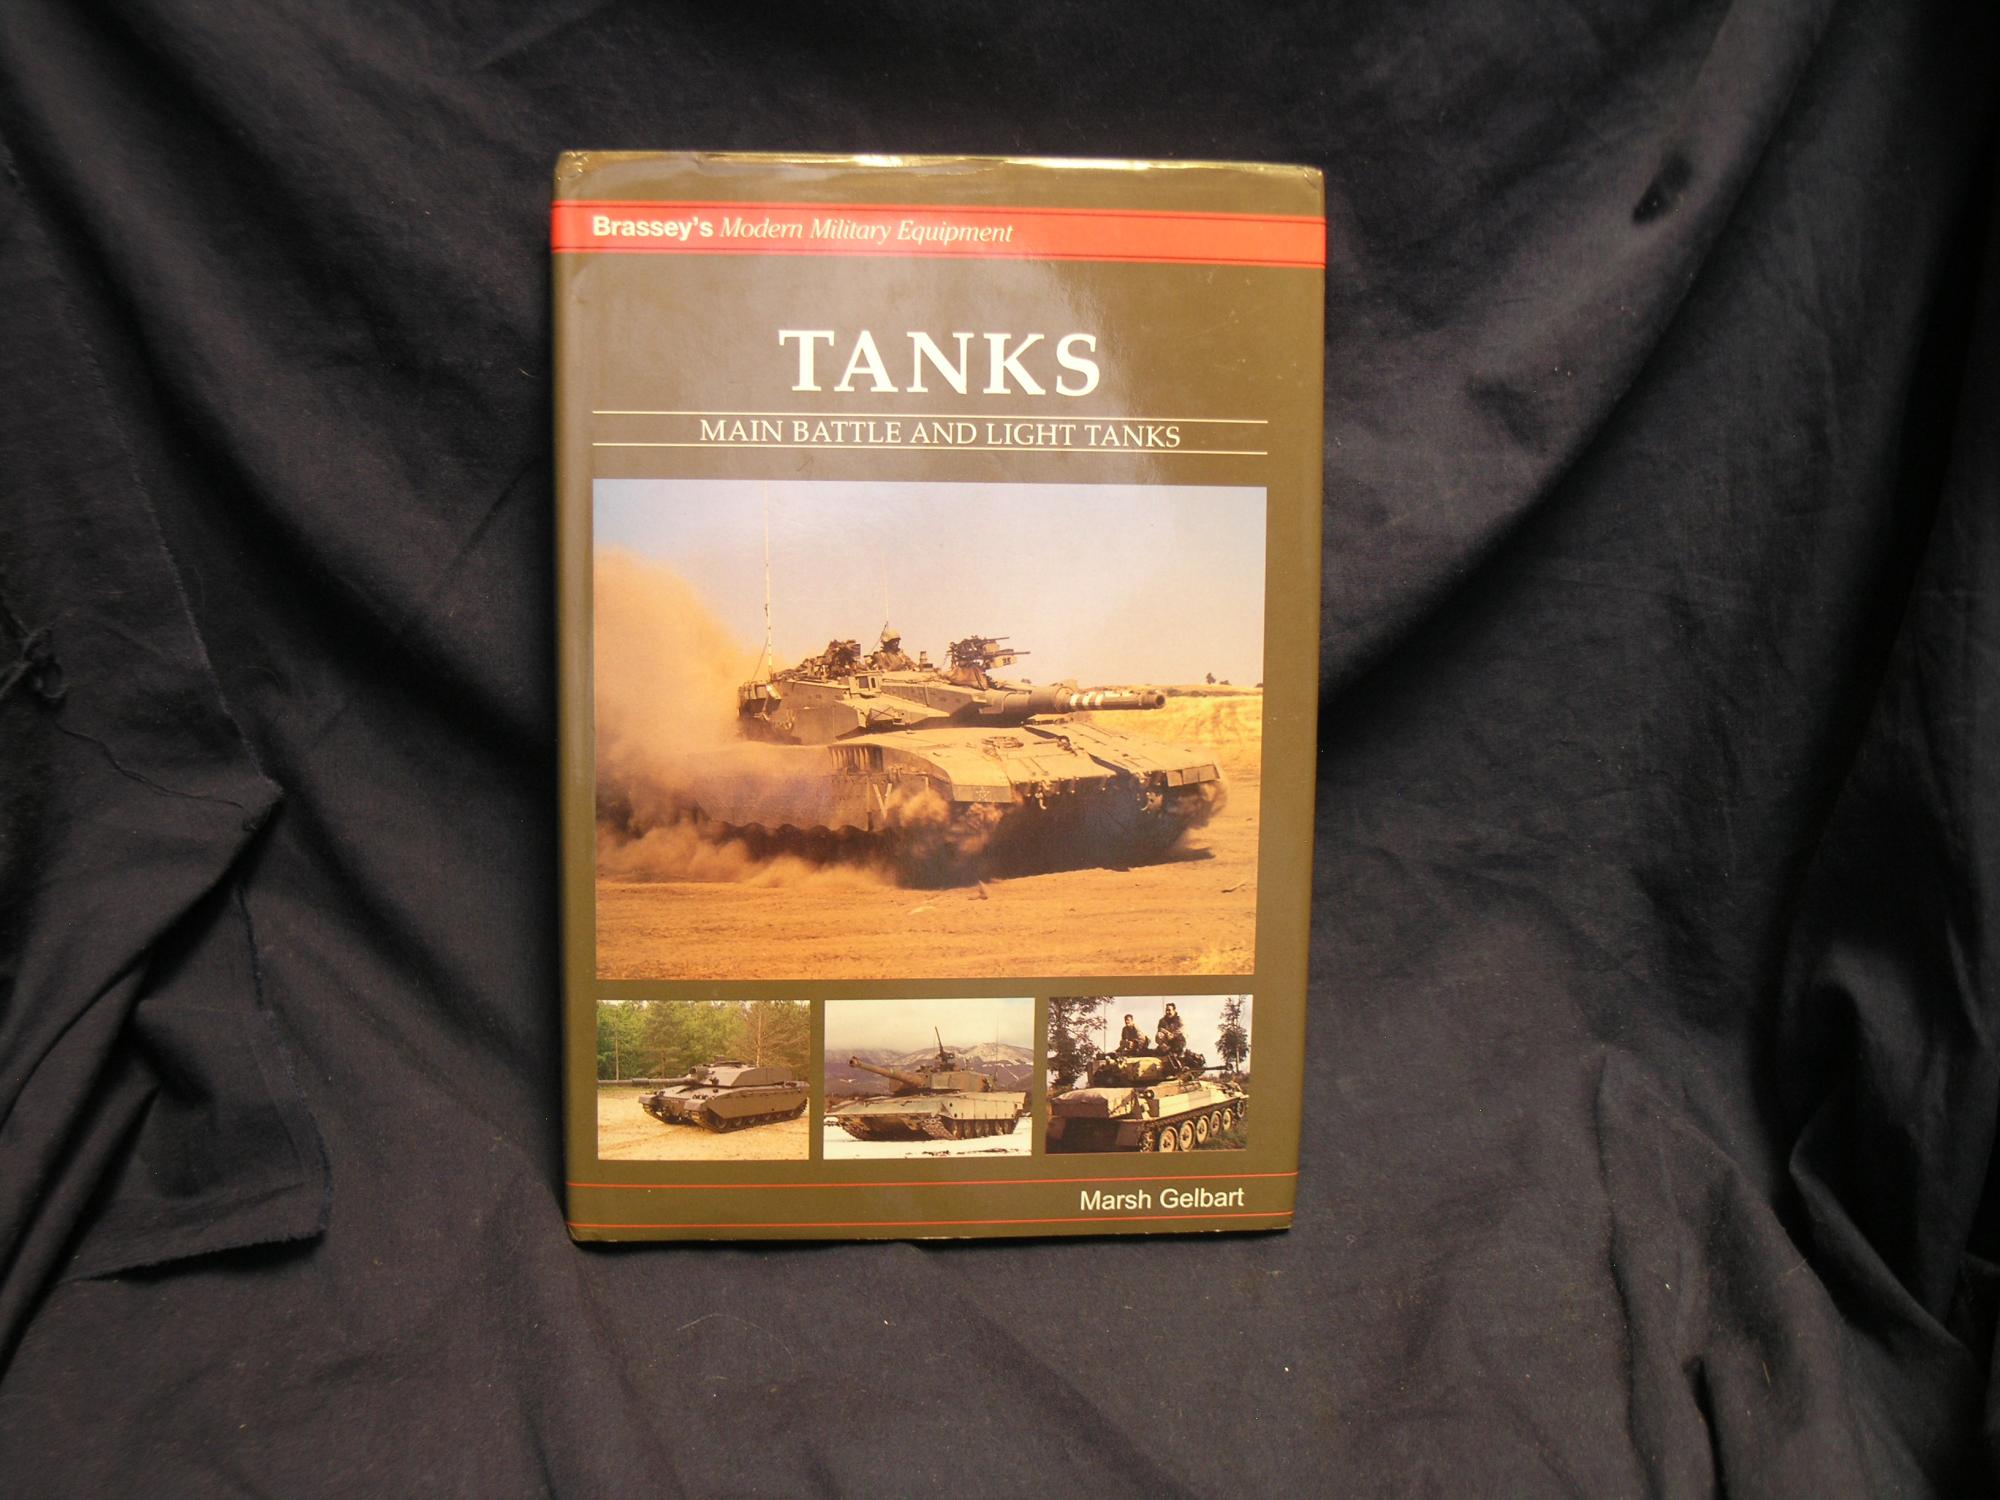 Tanks: Main Battle and Light Tanks (Modern Military Equipment). - Gelbart, Marsh